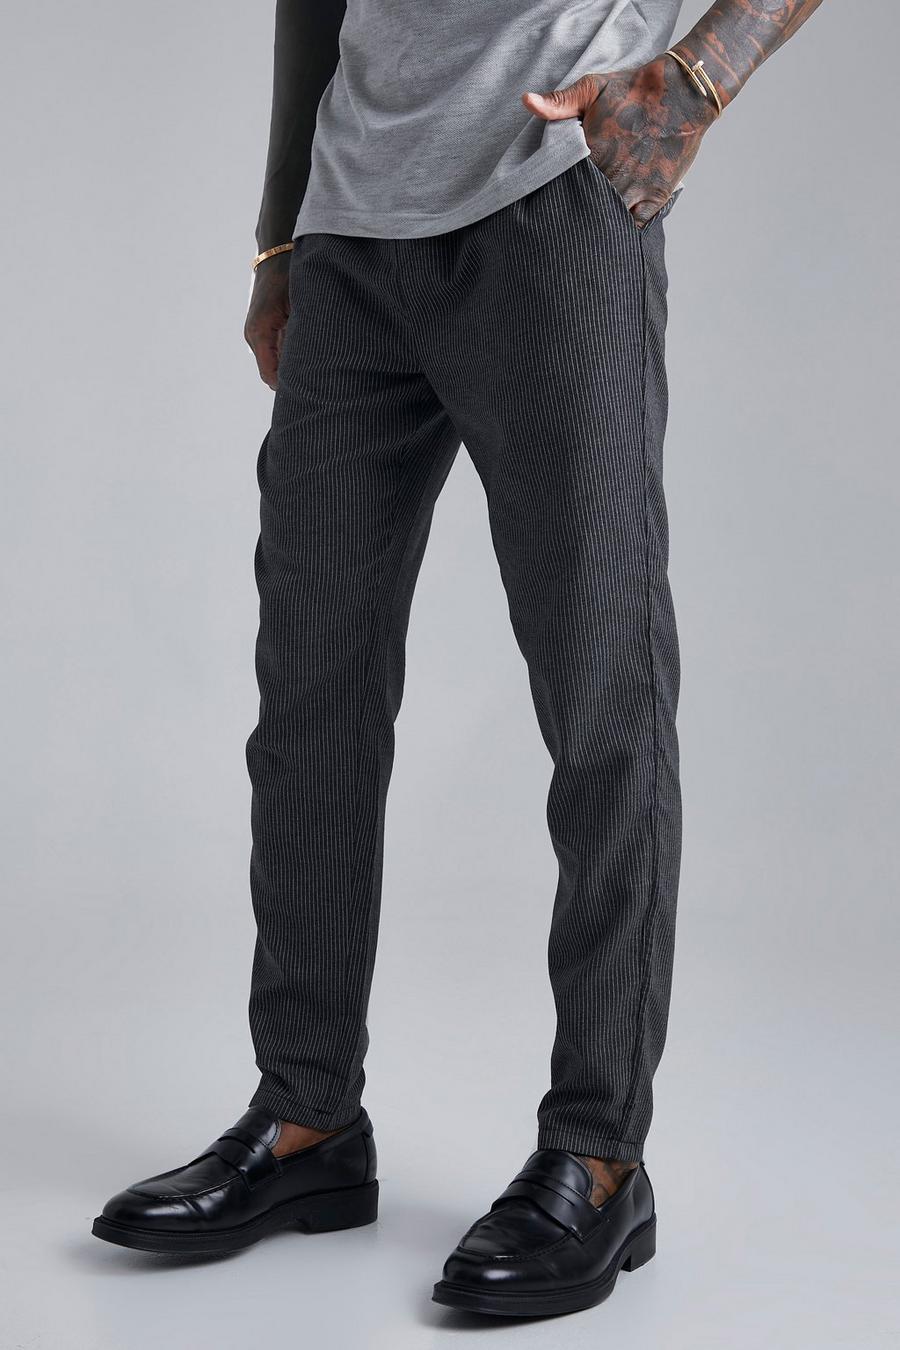 Pantaloni elasticizzati a righe verticali, Black negro